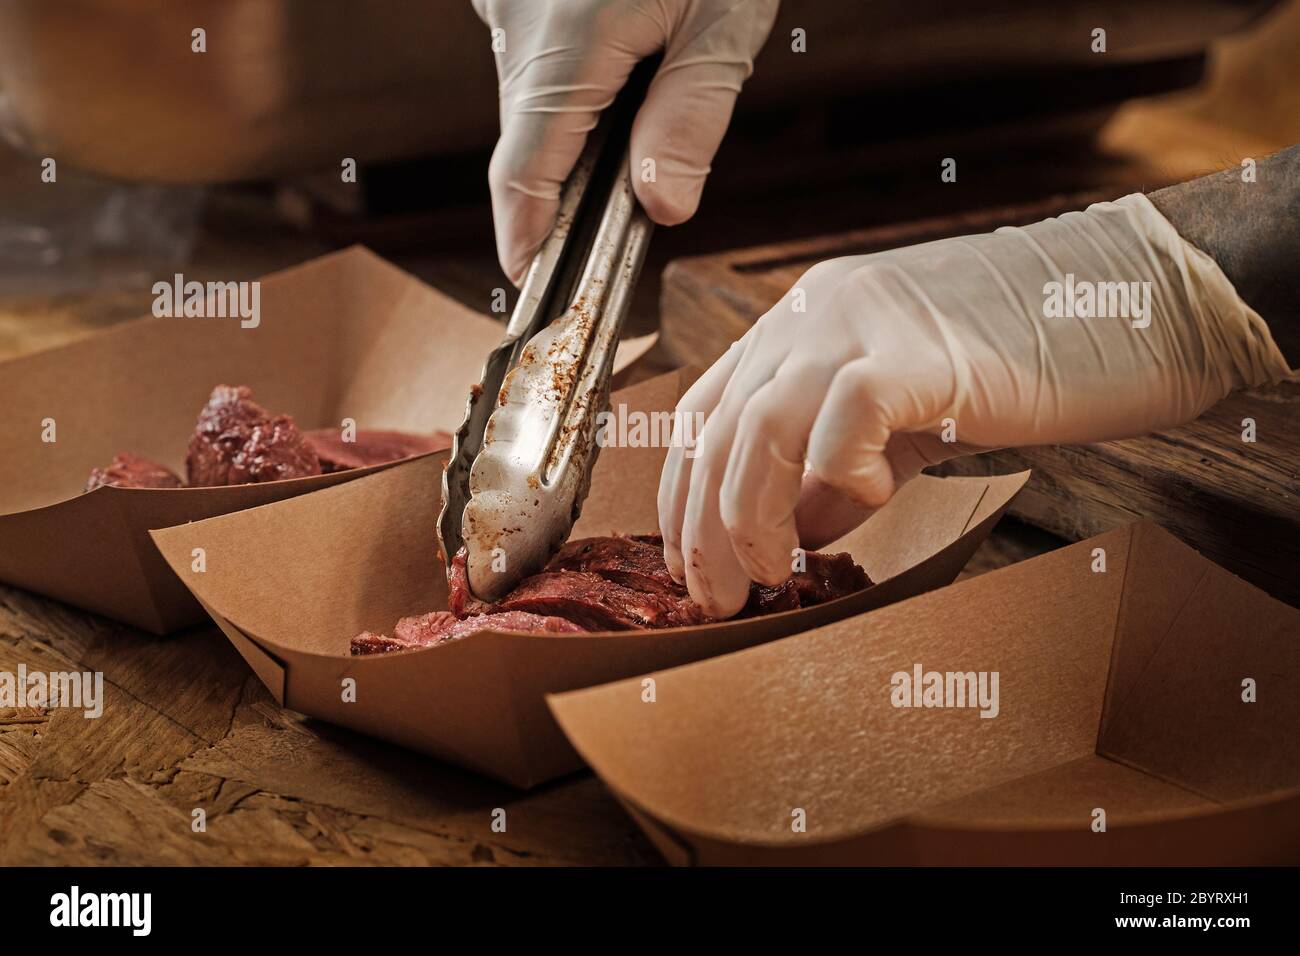 Il primo piano delle mani dello chef in guanti sterili depongono le fette fresche di carne di manzo arrosto con le pinze in un contenitore di carta Foto Stock